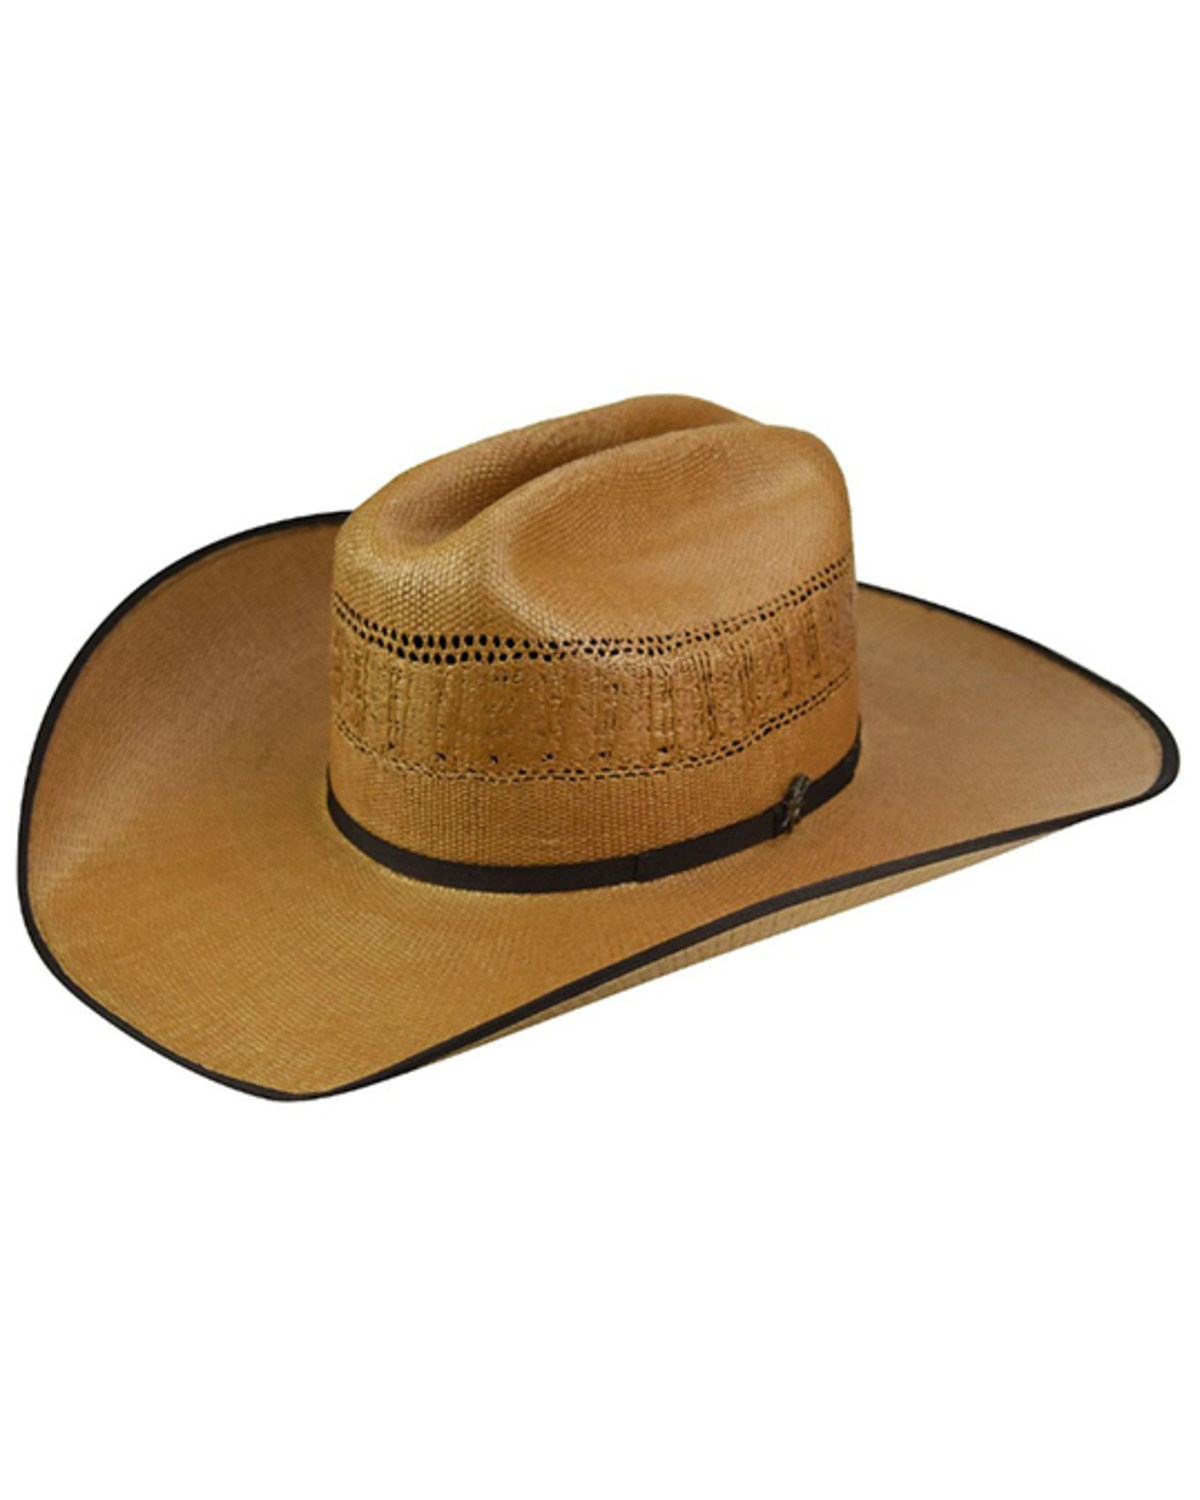 Bailey Derren Straw Cowboy Hat